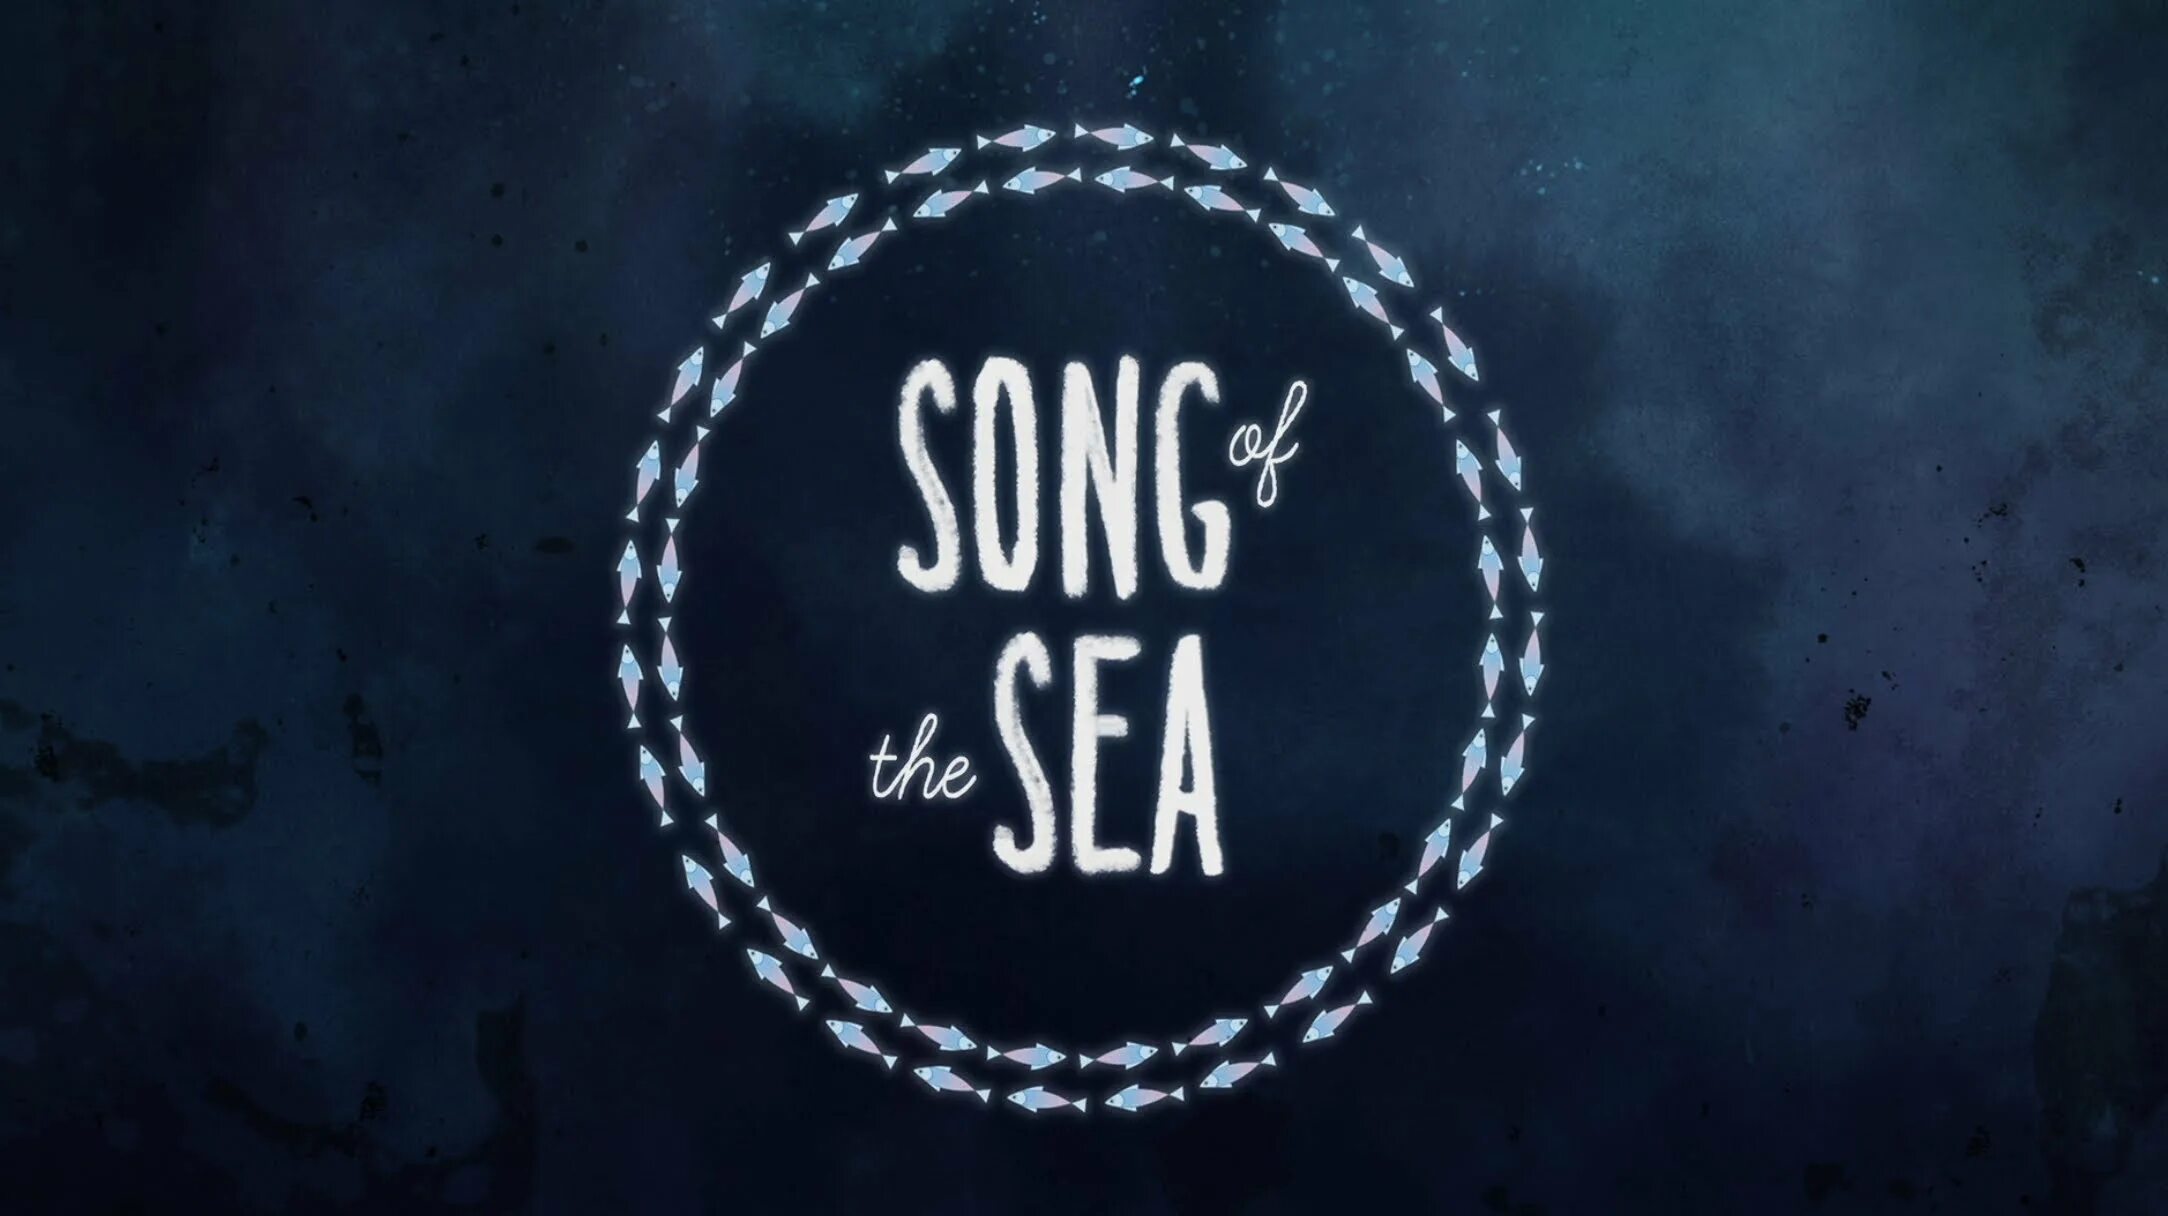 Funny song studio. Песнь моря. Song of the Sea 2014. Песнь моря афиша. Песнь моря Режиссер.